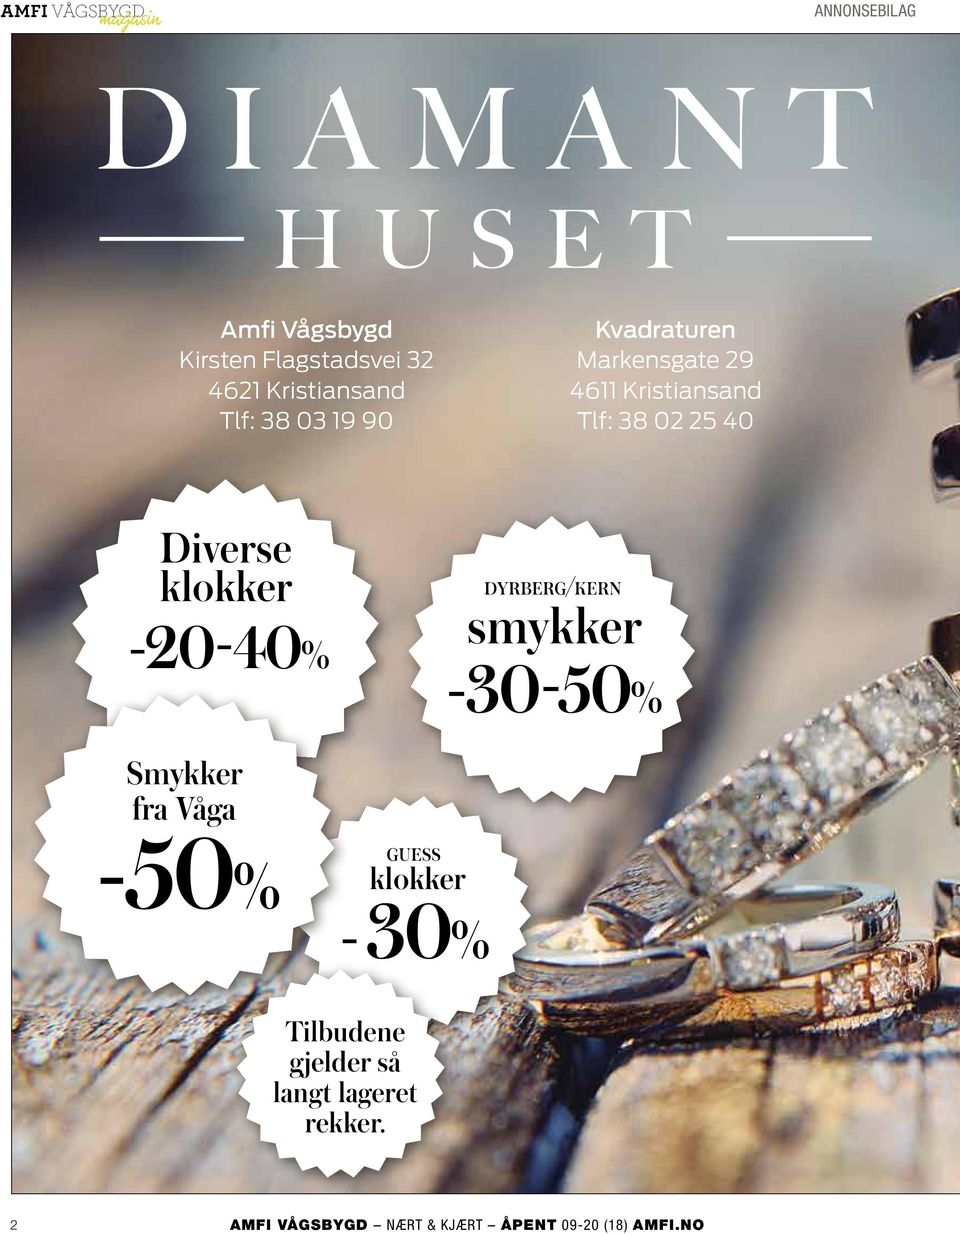 Kristiansand Tlf: 38 02 25 40 Diverse klokker -20-40% DYRBERG/KERN smykker